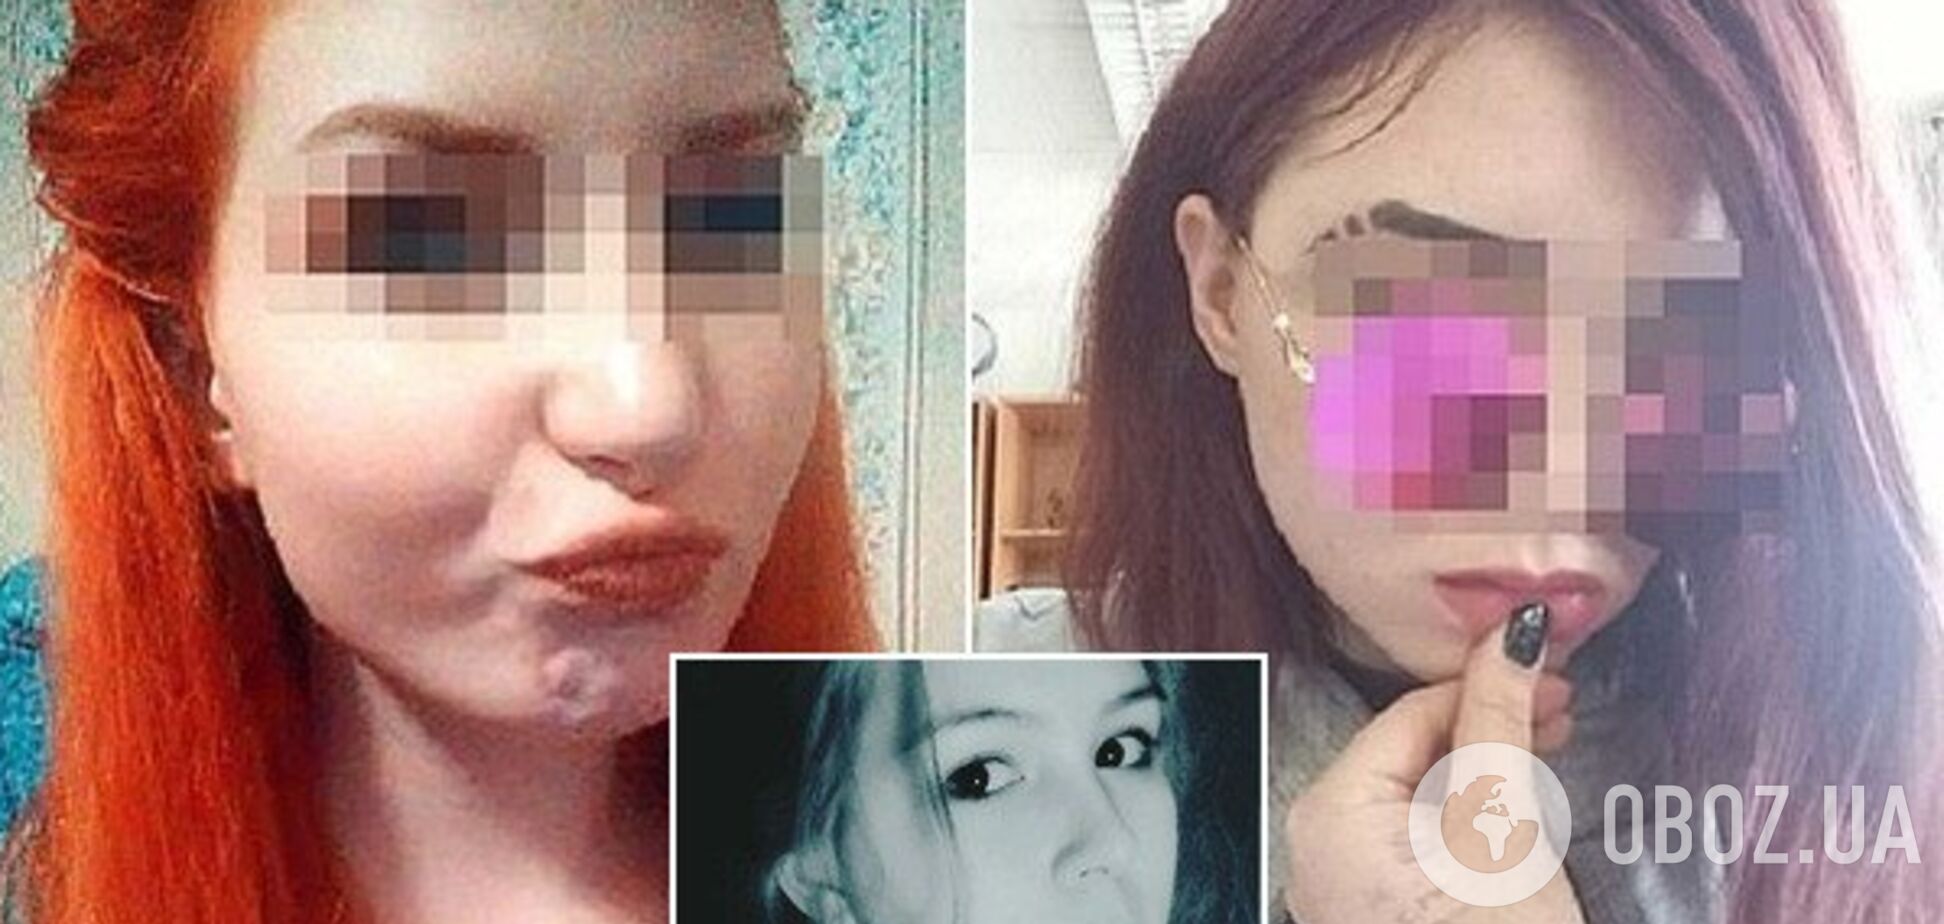 'Была слишком красивой': всплыли подробности зверского убийства девушки подругами в России